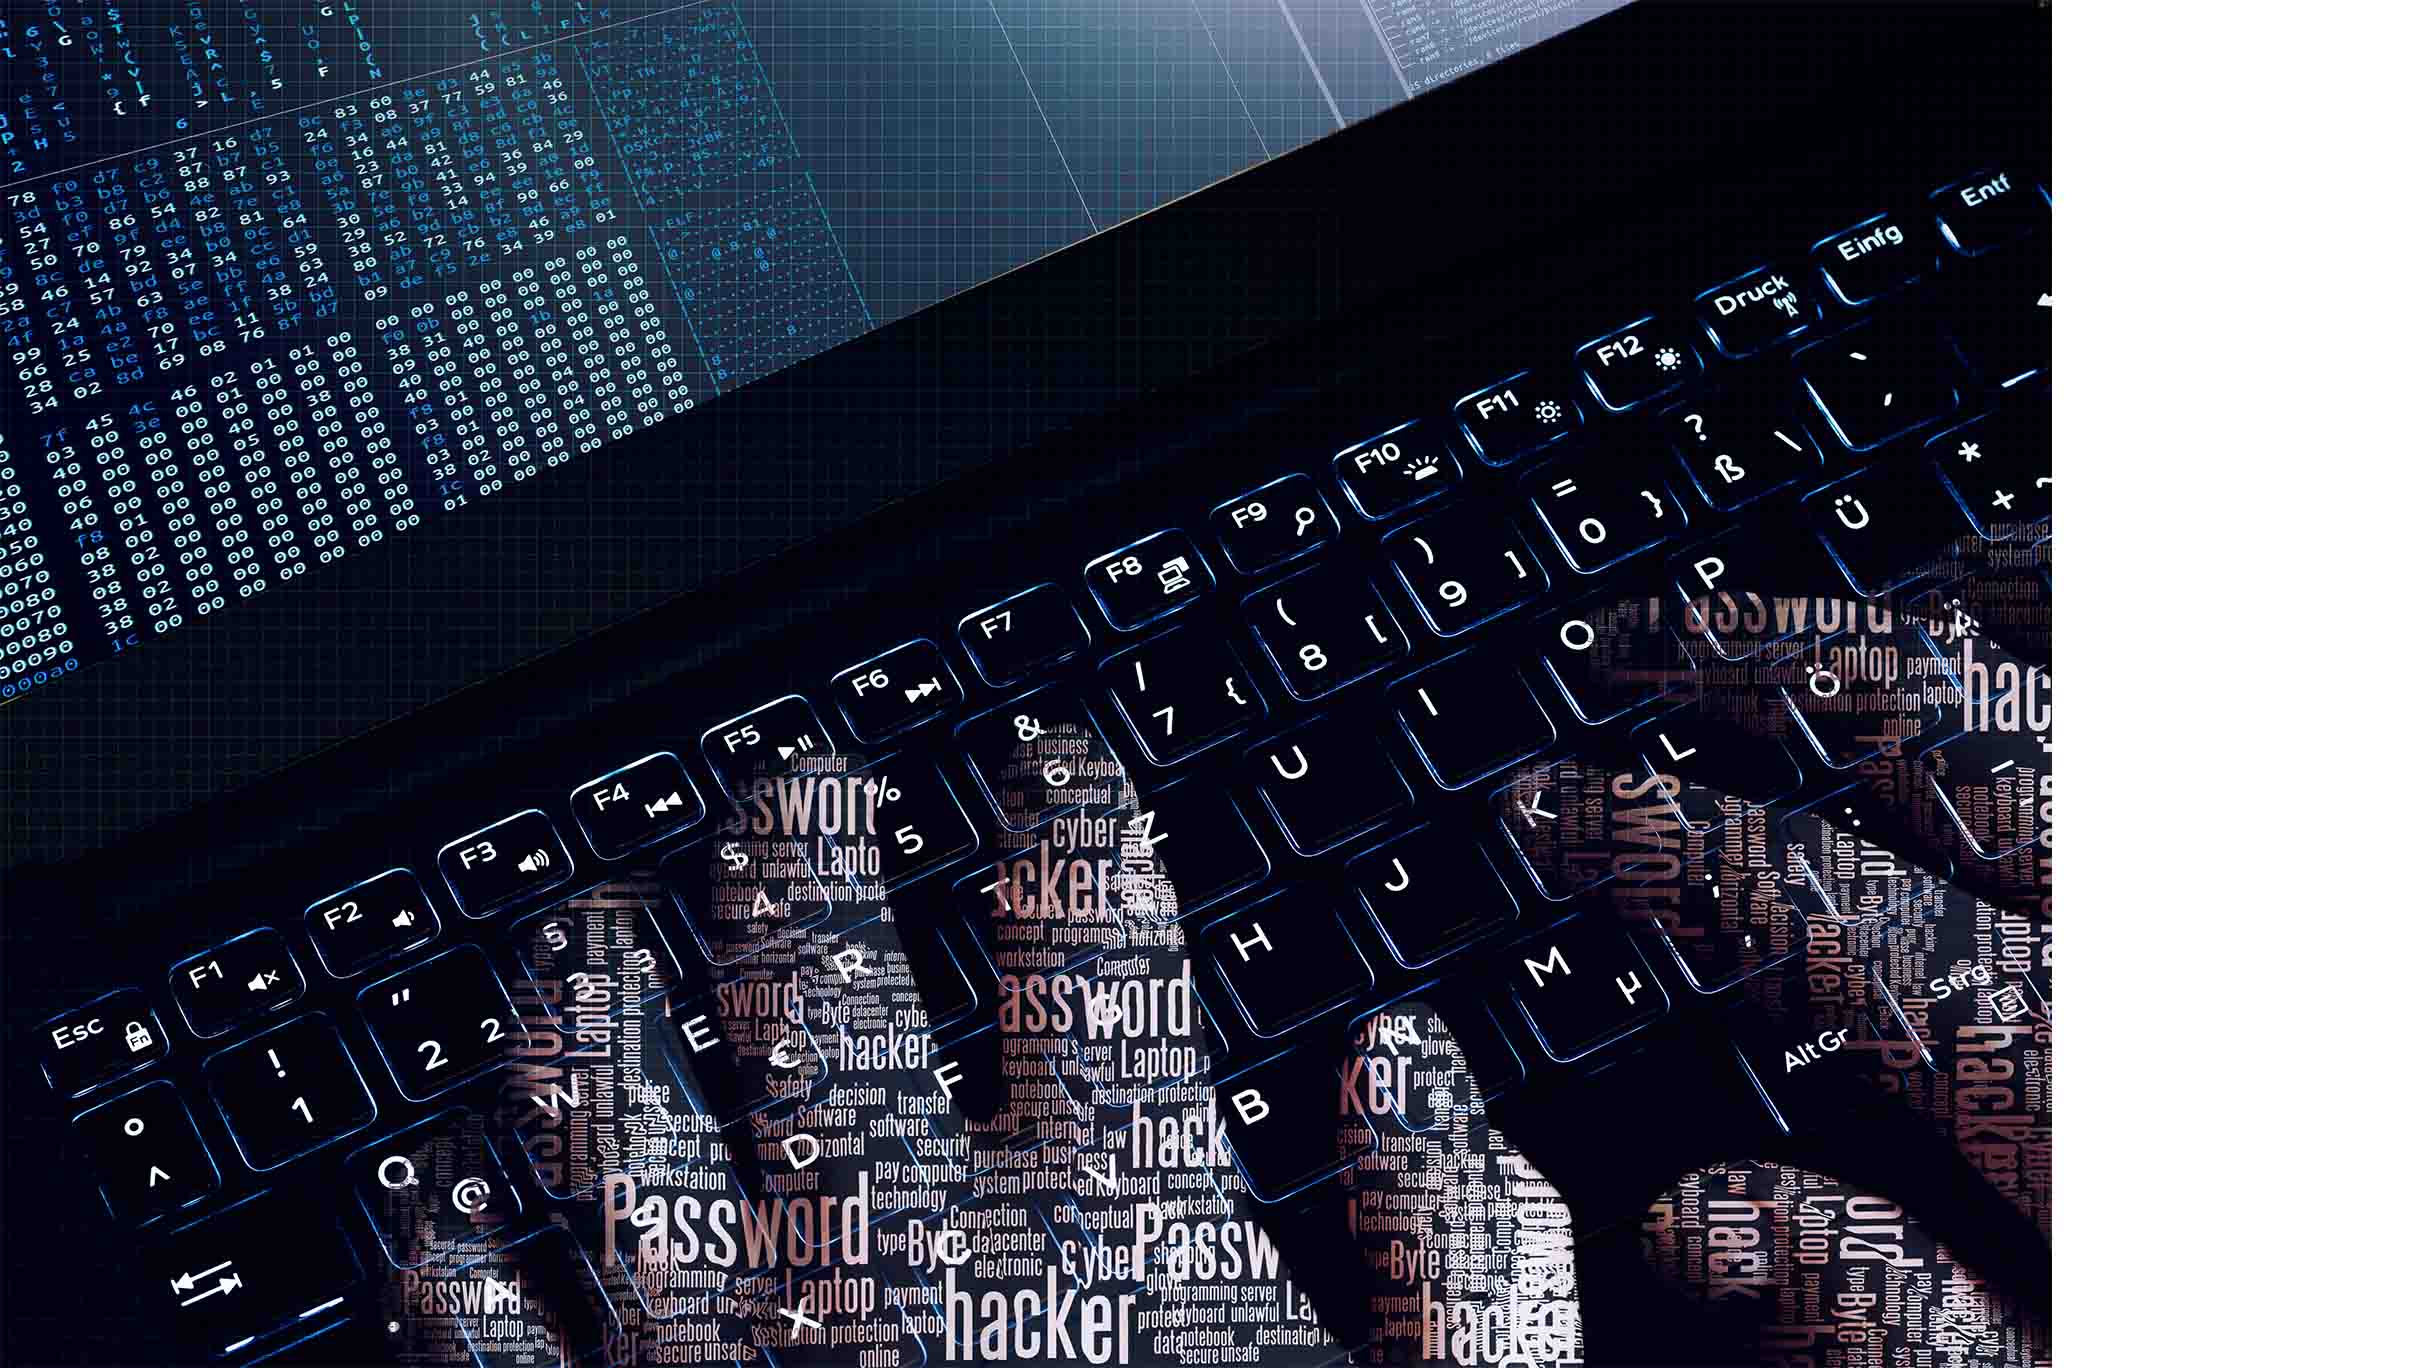 Human element of cyber security risks | GE Digital blog